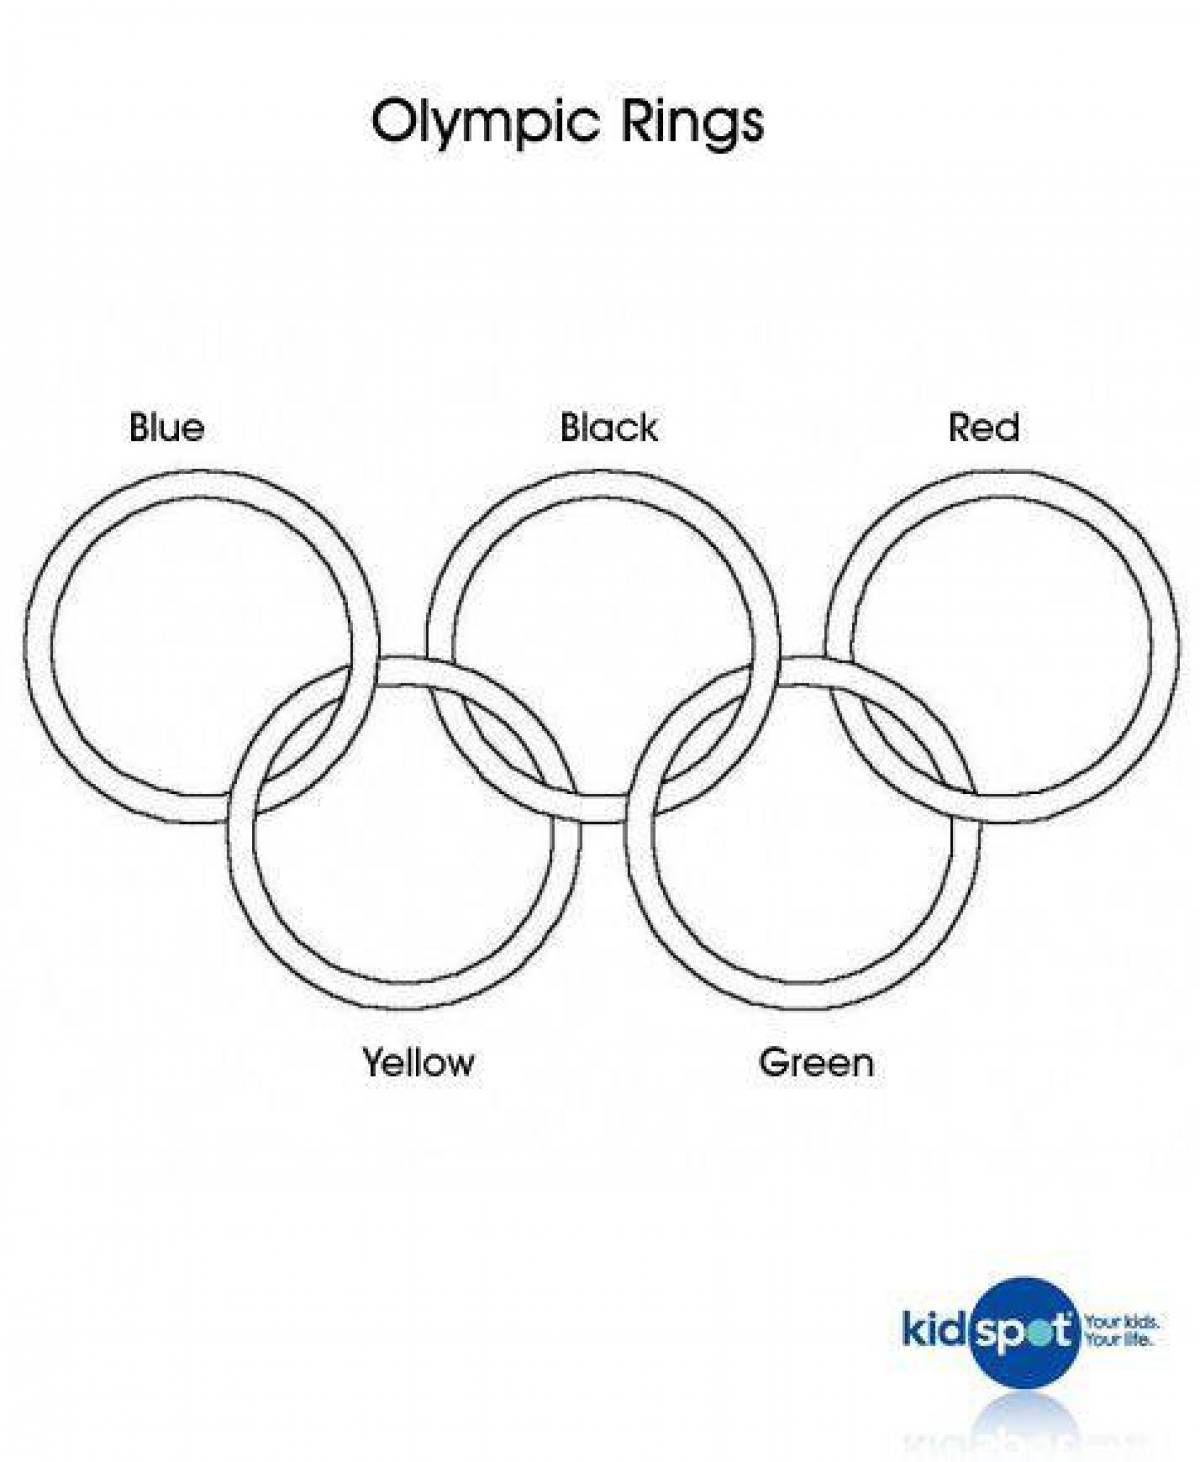 Олимпийские кольца шаблон